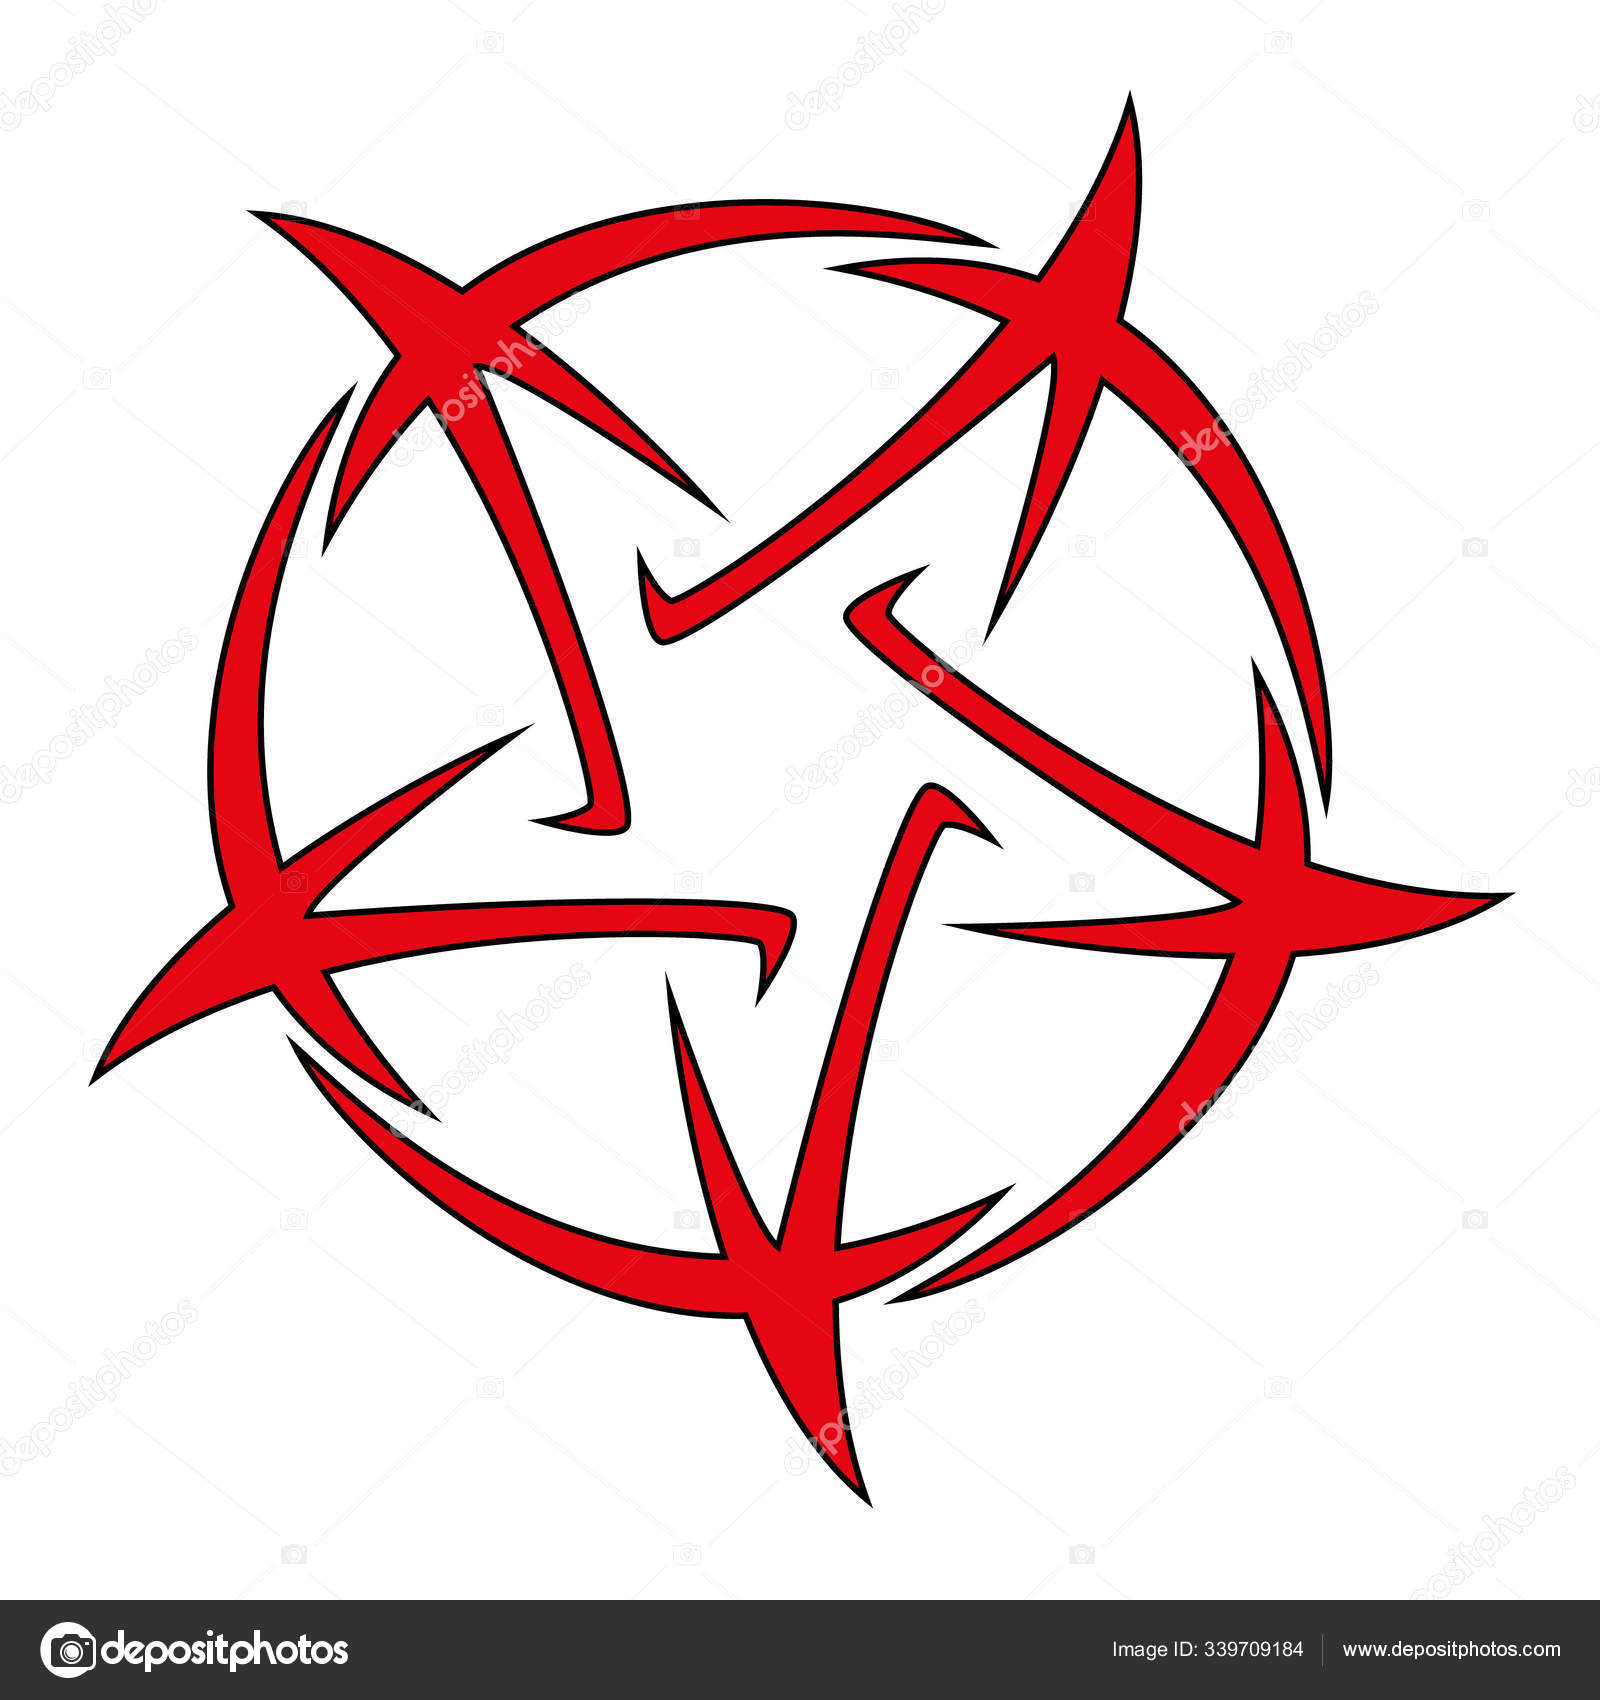 Pentagram tattoo by Airin-Wolf on DeviantArt